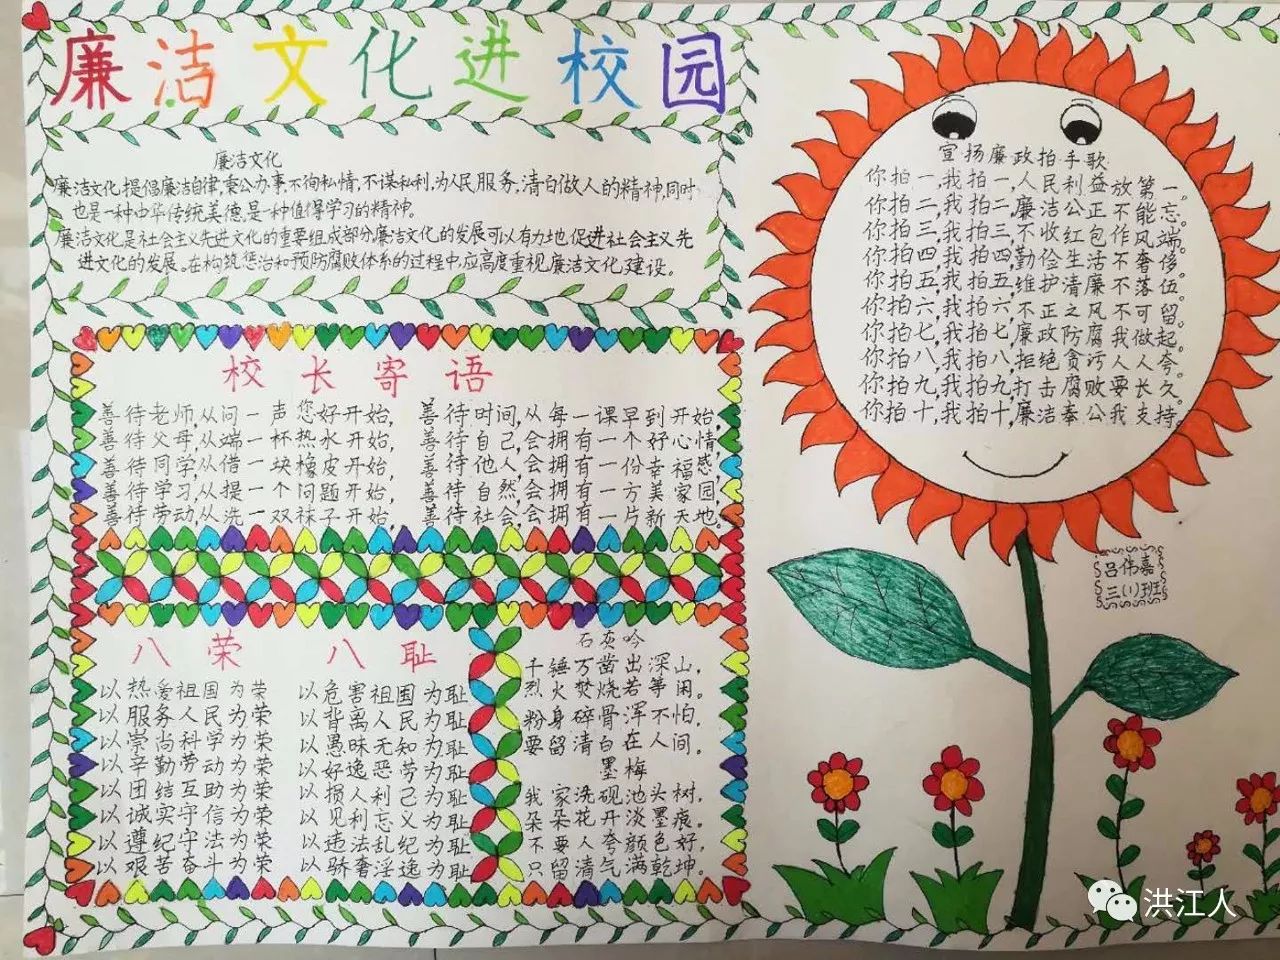 【教育】洪江这所学校的校园手抄报真有创意!